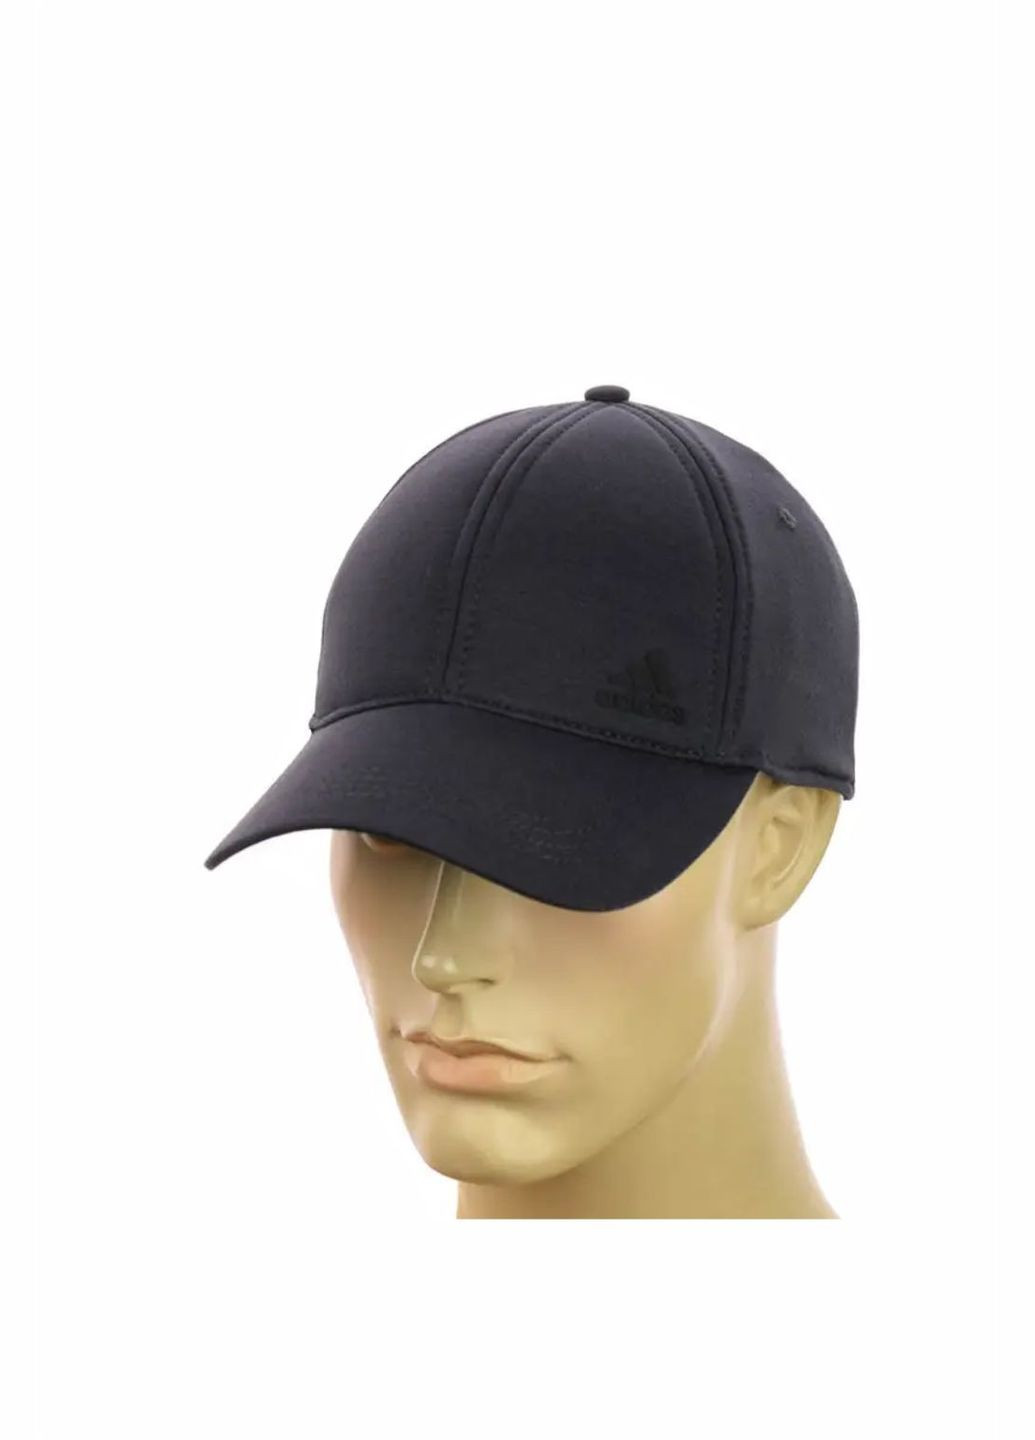 Трикотажна чоловіча кепка на резинці Adidas / Адідас No Brand чоловіча кепка закрита (278279391)